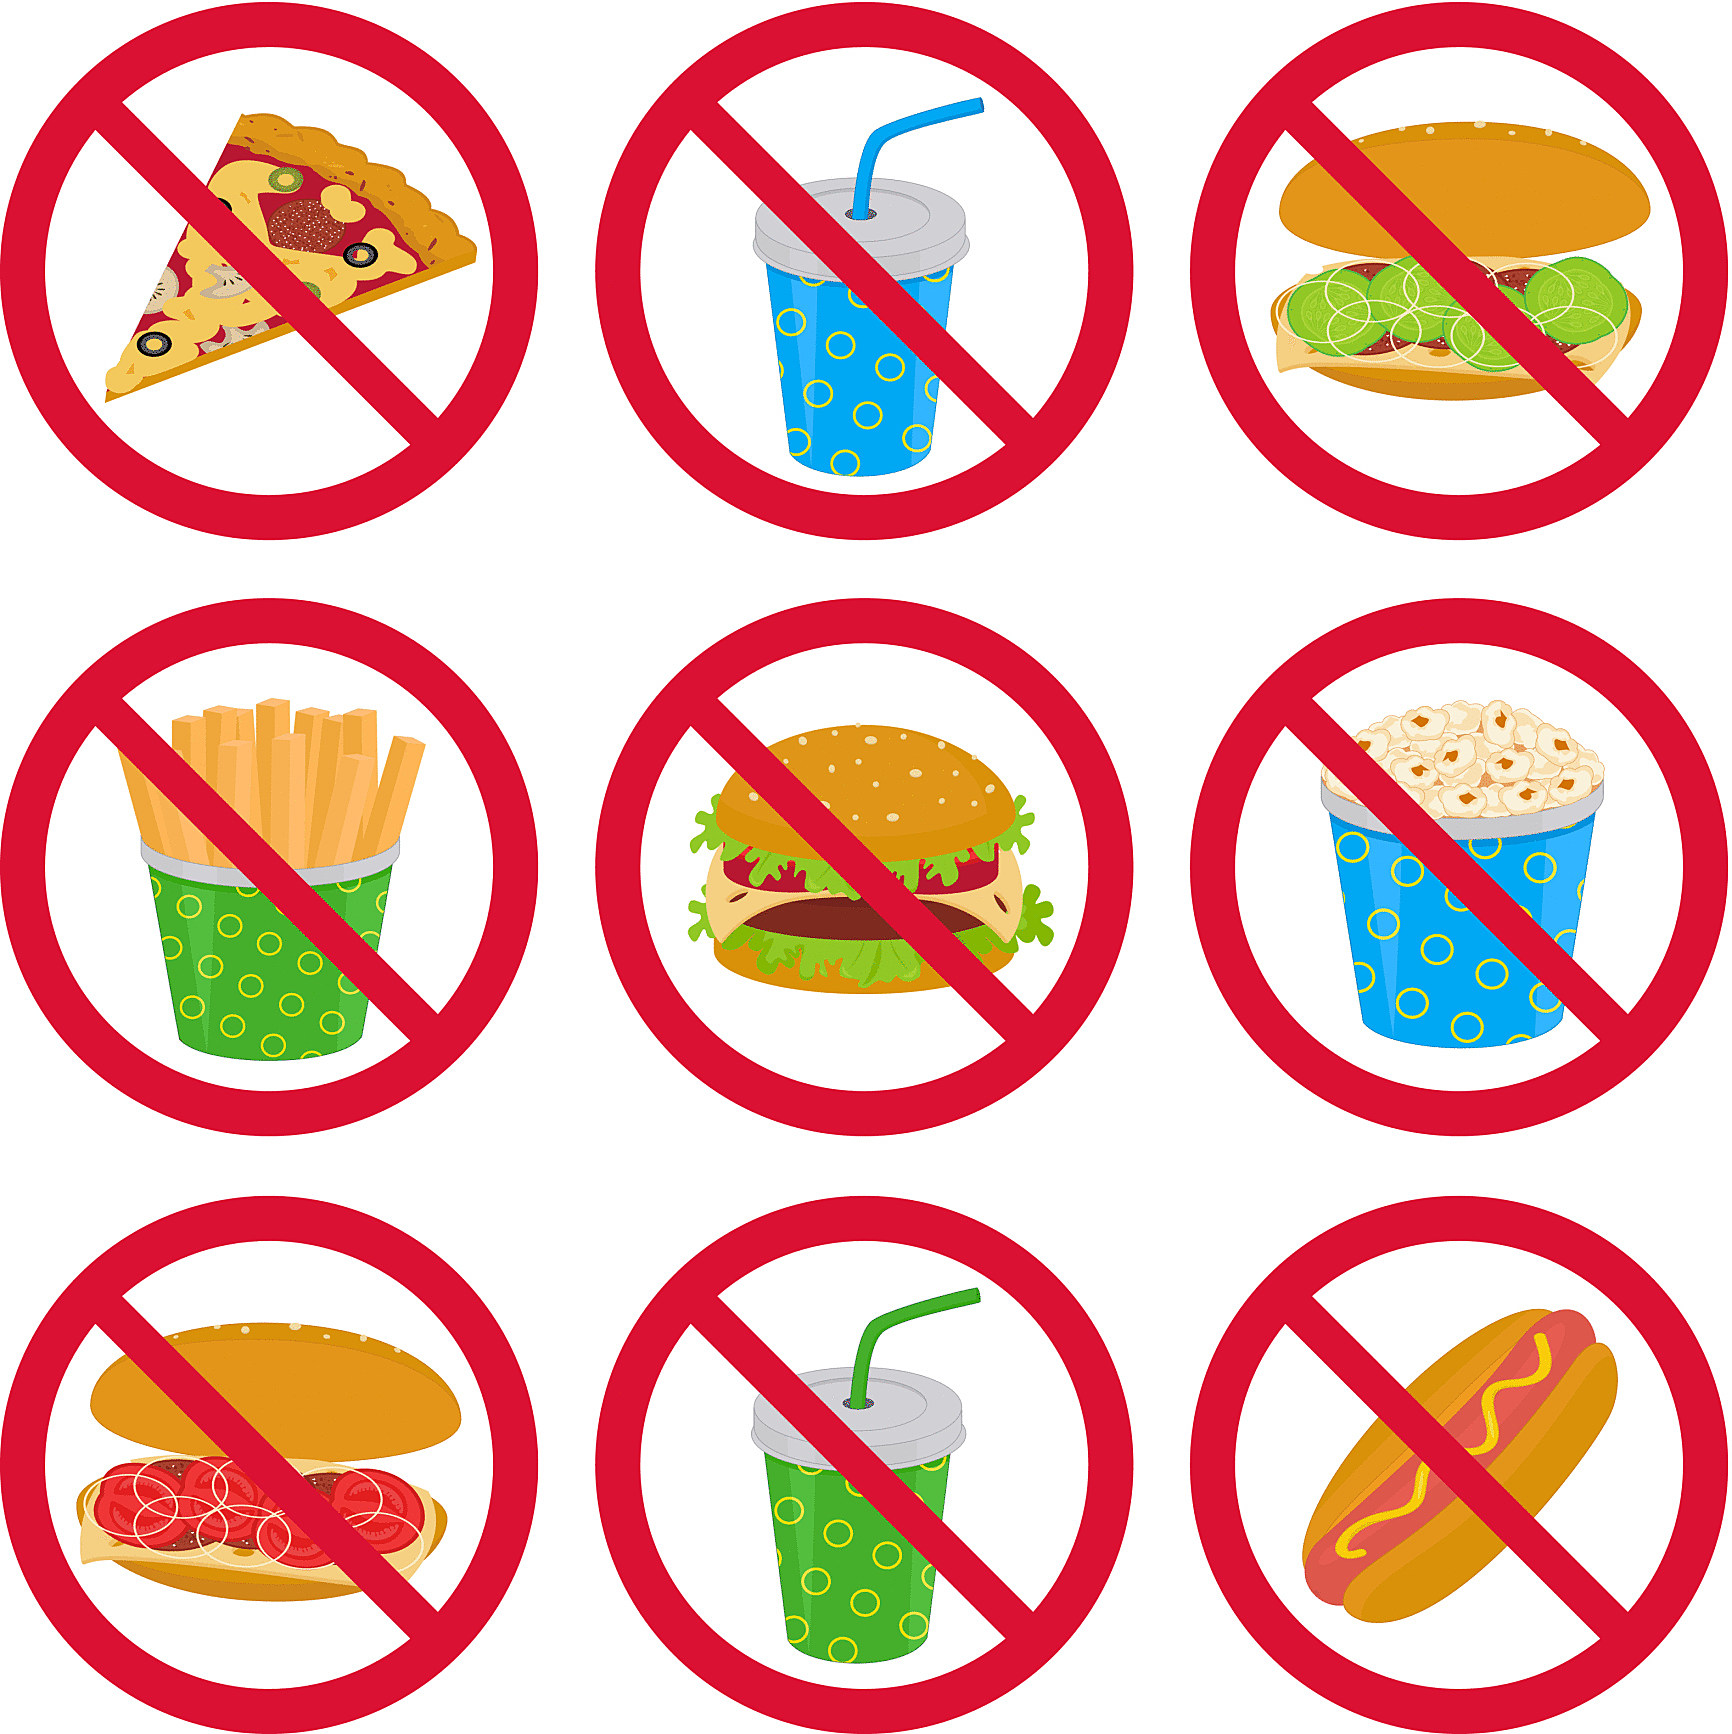 Что можно и нельзя 24 апреля. Запрет на вредную пищу. Знаки здорового образа жизни. Знак запрета вредной еды. Рисунок вредные привычки в еде.